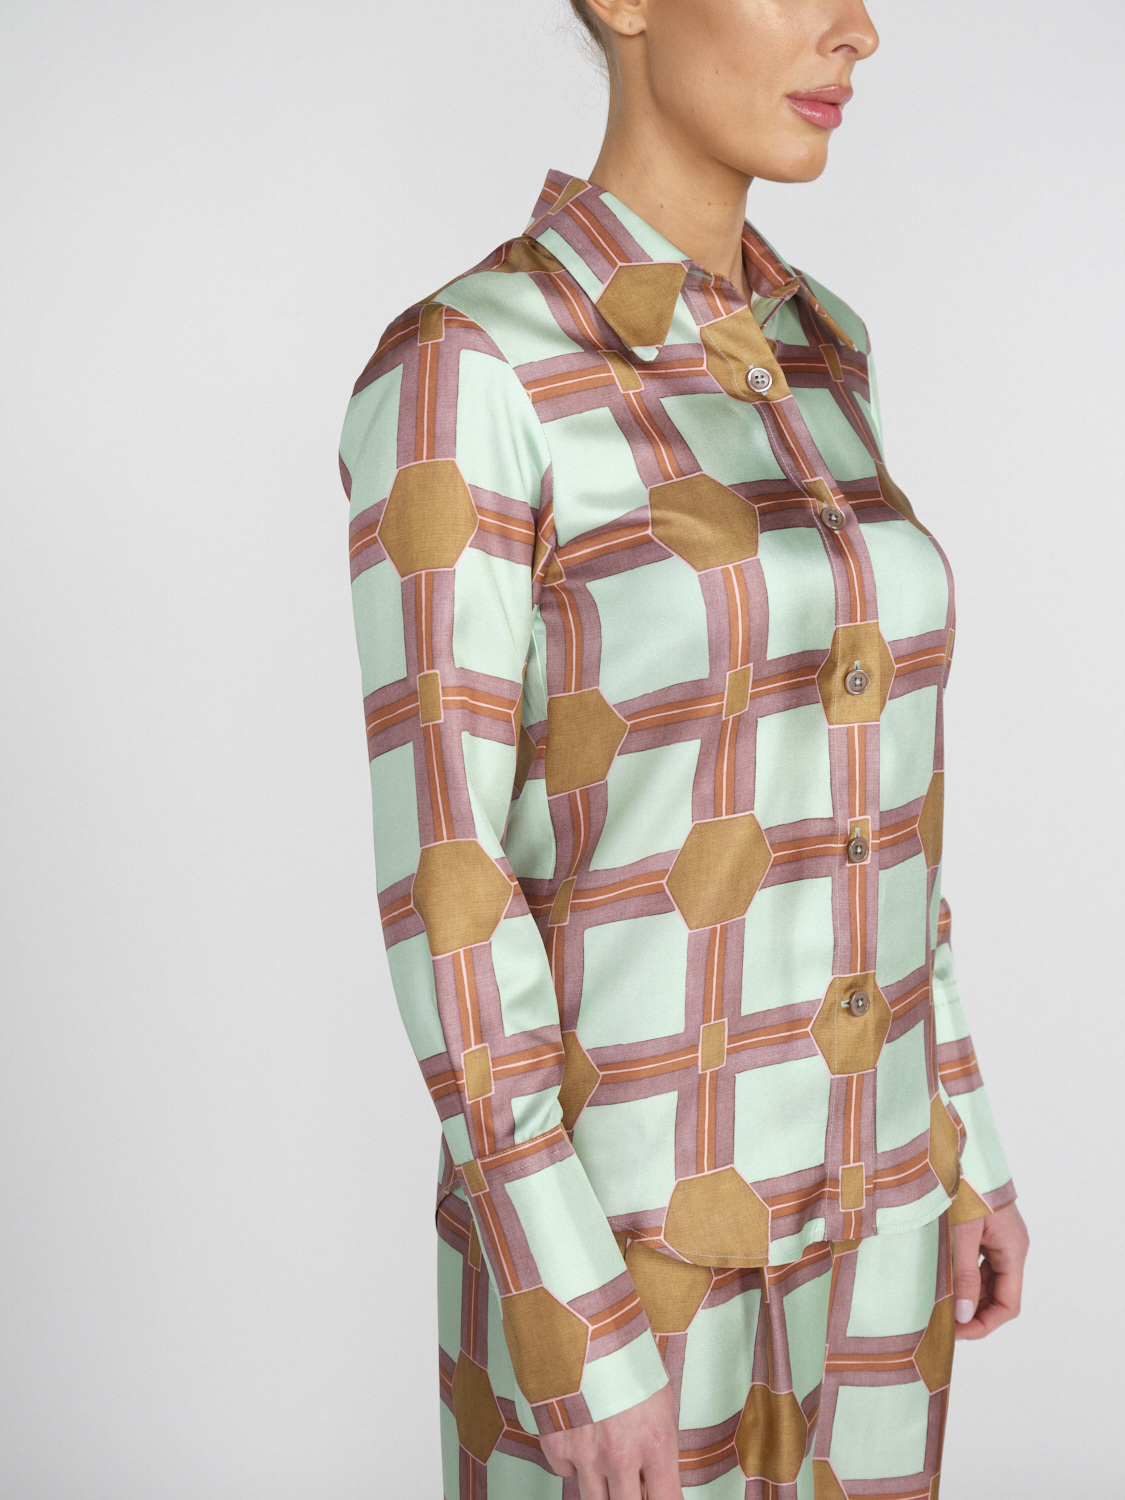 Odeeh Seidencrêpe-Bluse mit graphischem Muster   mehrfarbig 36